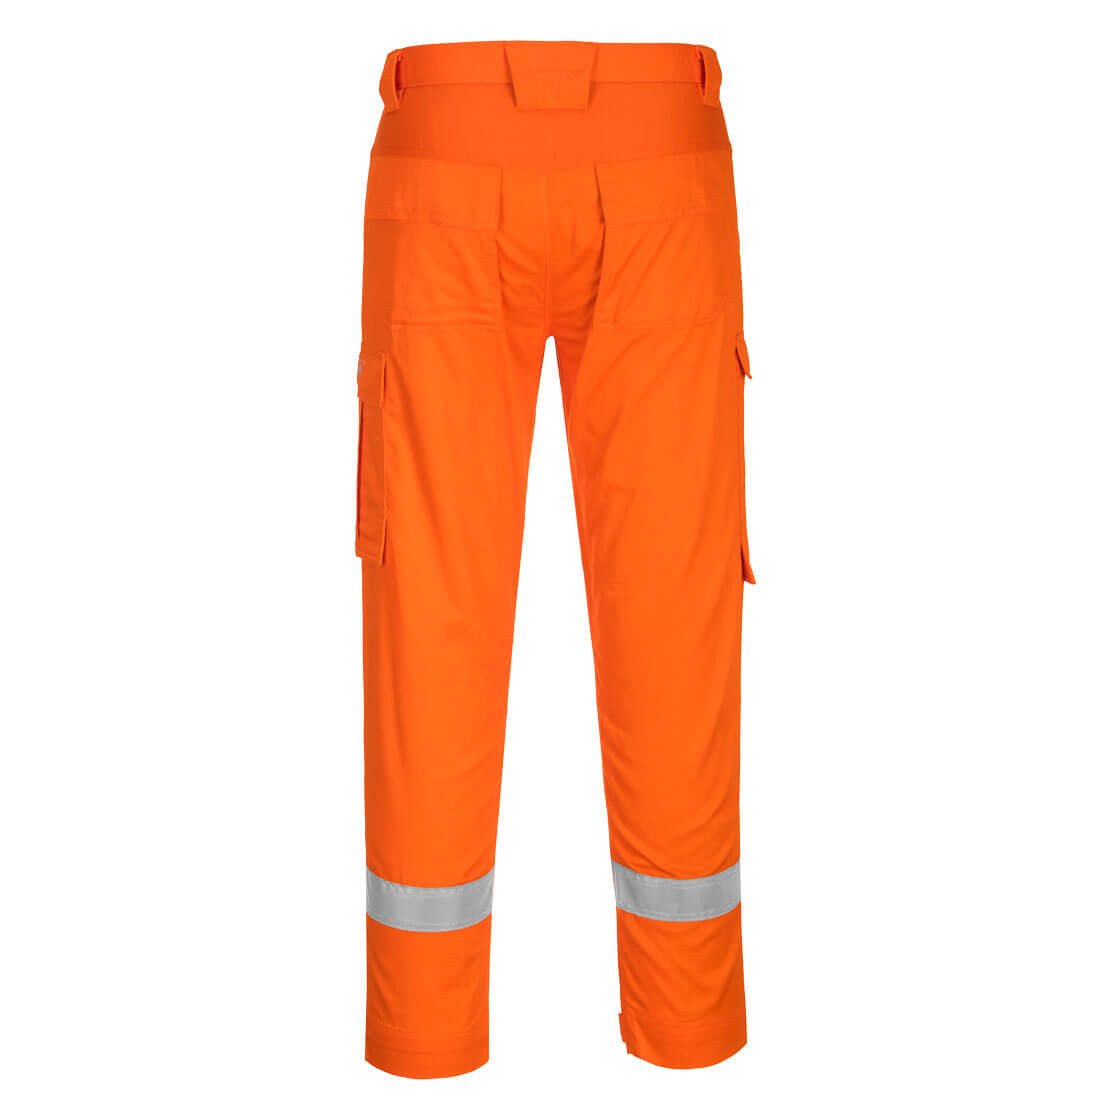 Pantaloni usori Bizflame Plus cu panouri elastice - Imbracaminte de protectie